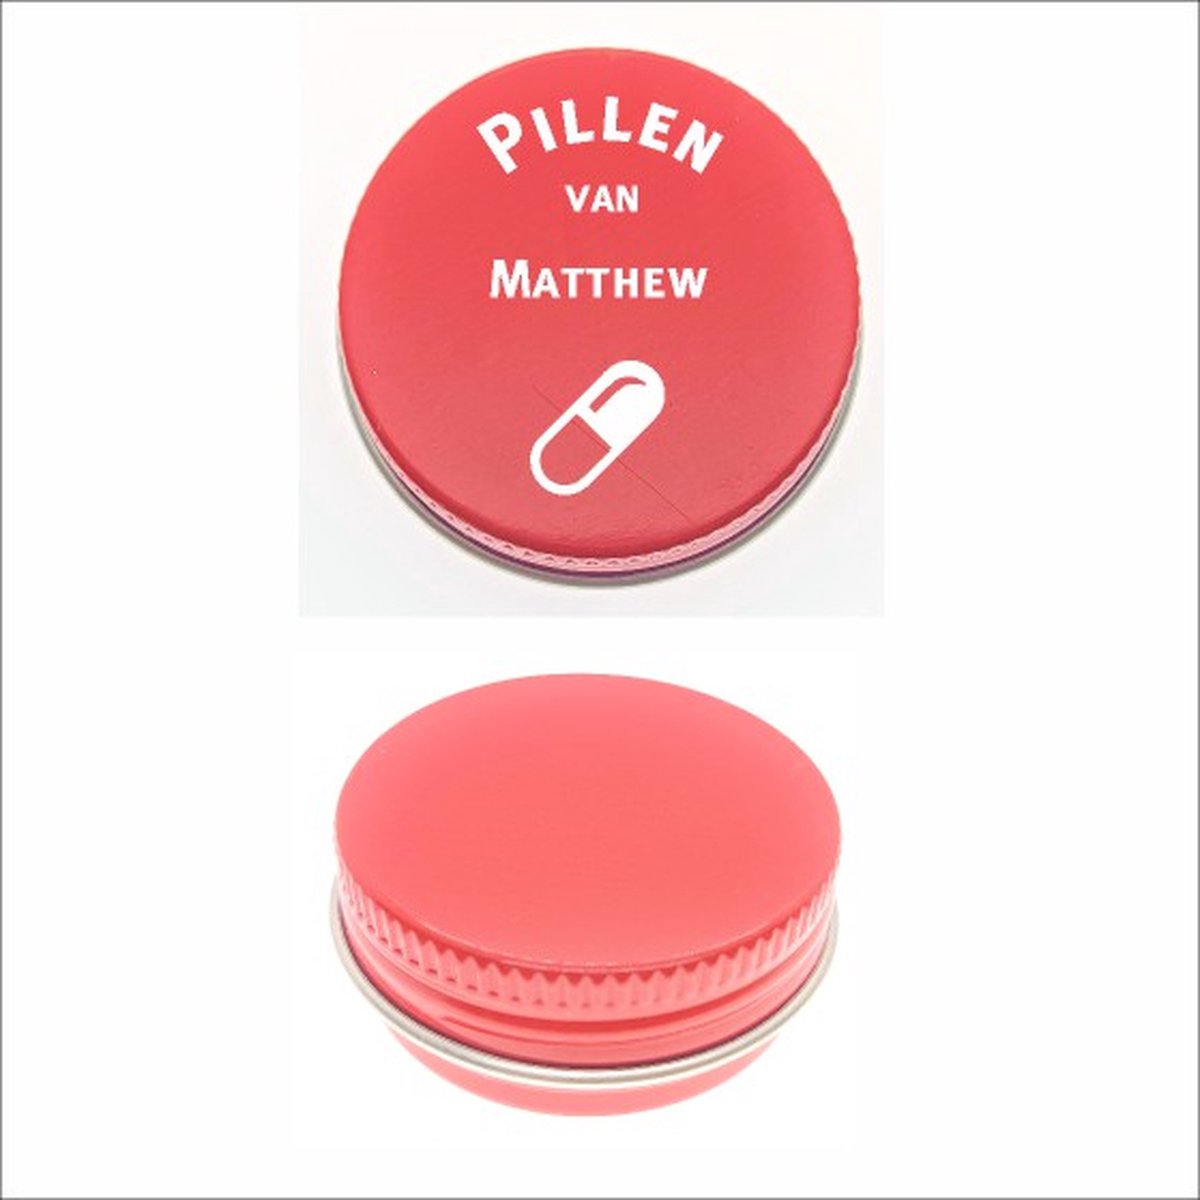 Pillen Blikje Met Naam Gravering - Matthew